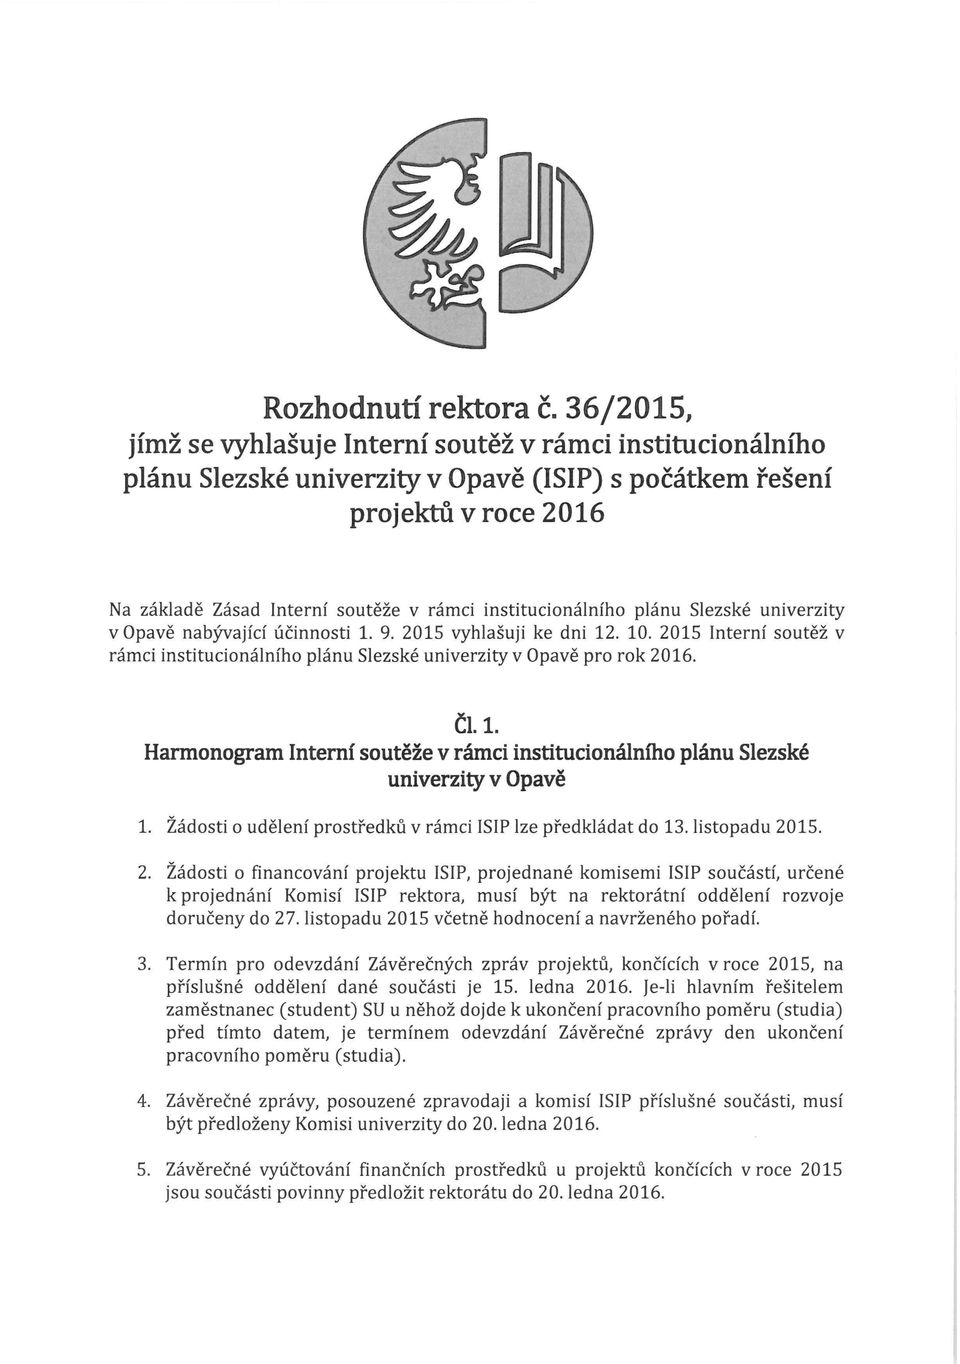 institucionálního plánu Slezské univerzity v Opavě nabývající účinnosti 1. 9. 2015 vyhlašuji ke dni 12. 10. 2015 Interní soutěž v rámci institucionálního plánu Slezské univerzity v Opavě pro rok 2016.